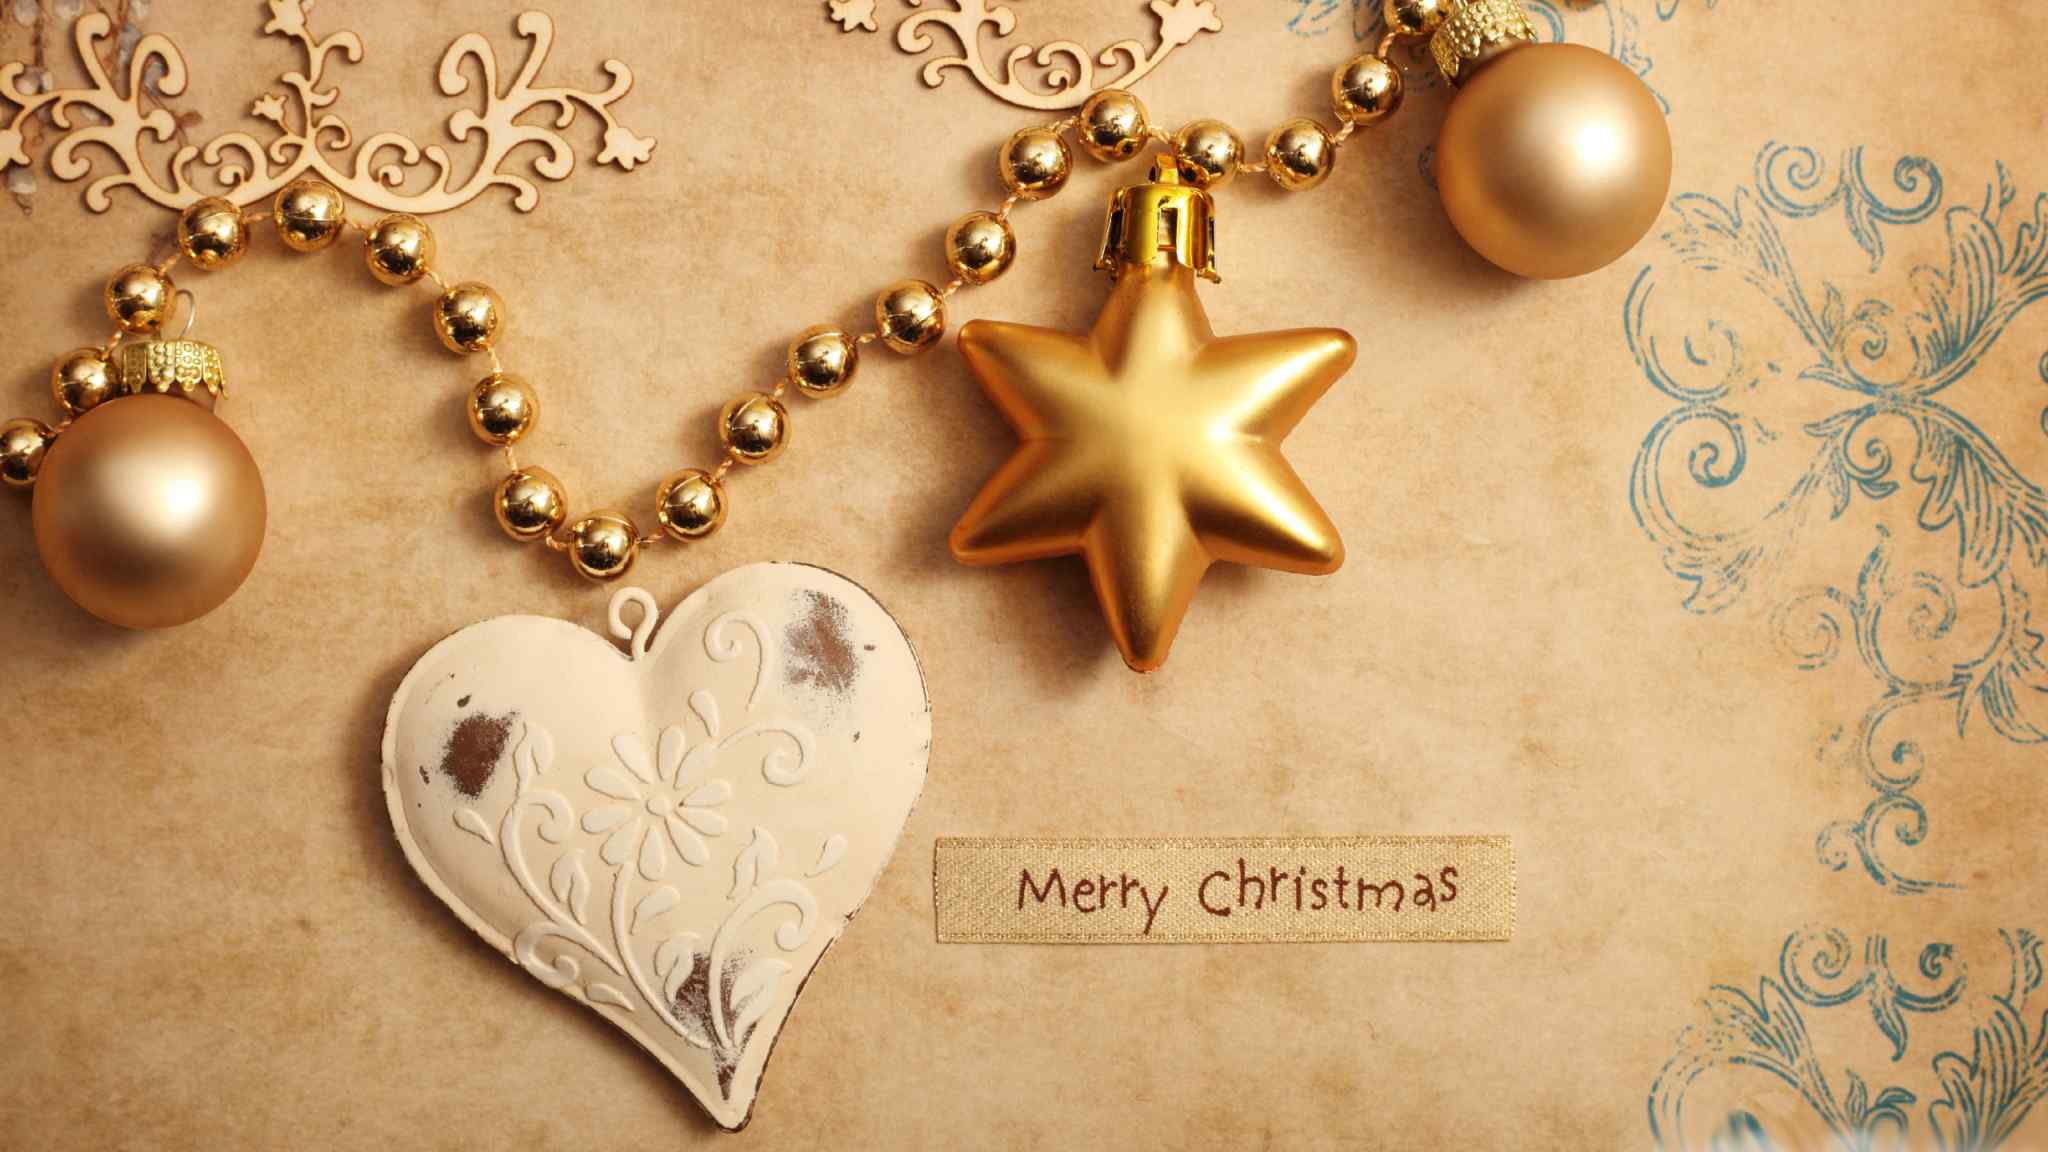 金黄色的圣诞节装饰小礼品图片壁纸